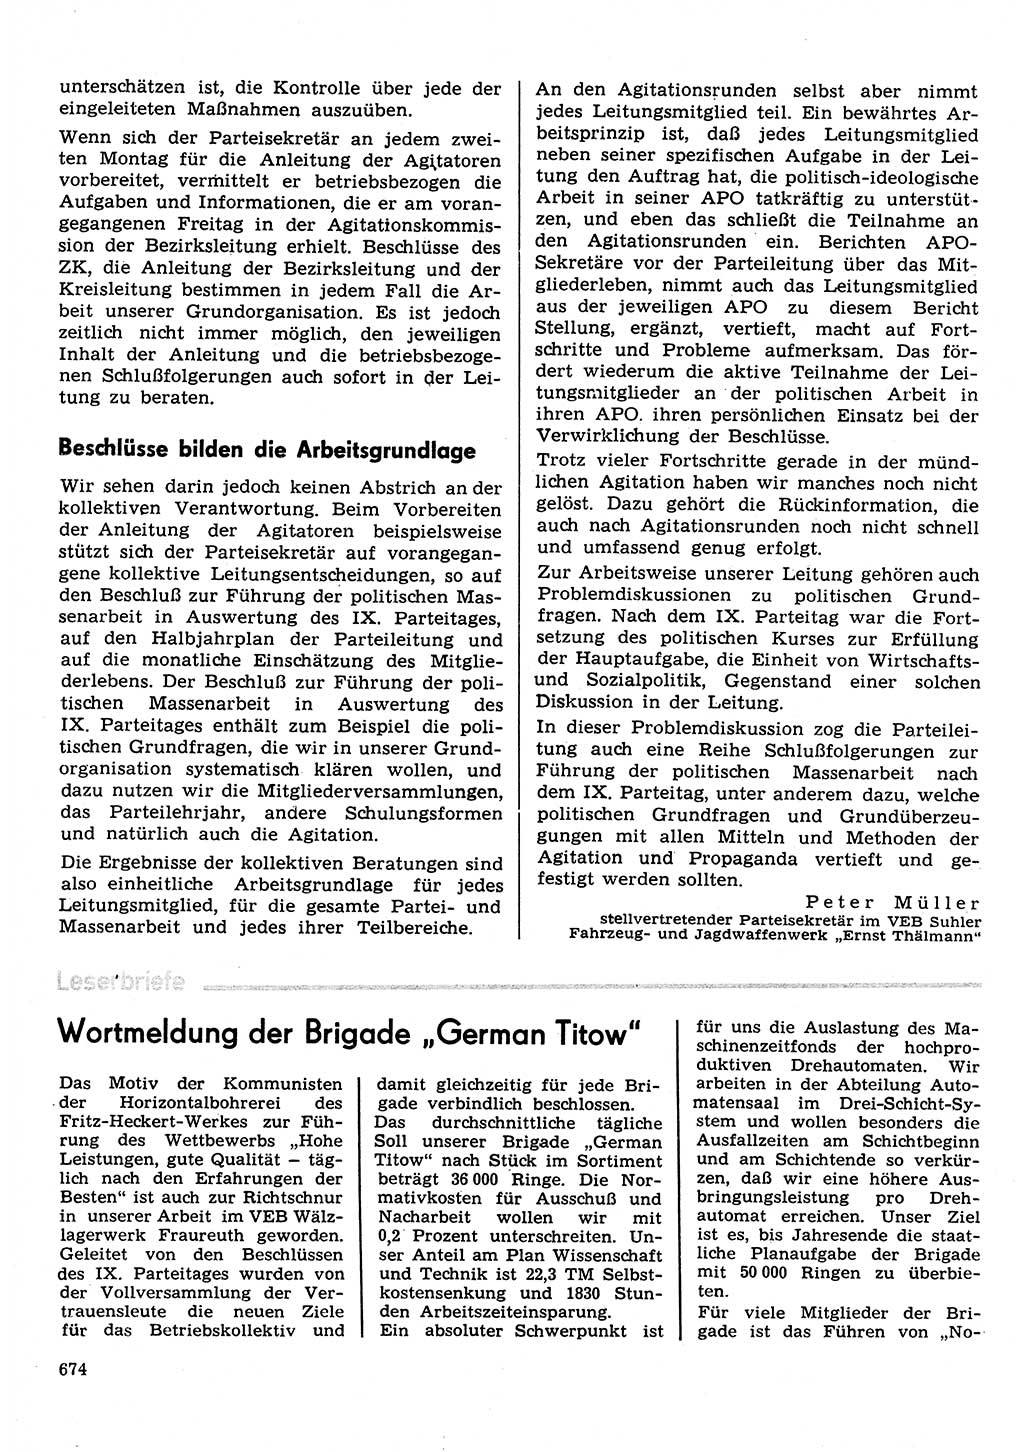 Neuer Weg (NW), Organ des Zentralkomitees (ZK) der SED (Sozialistische Einheitspartei Deutschlands) für Fragen des Parteilebens, 31. Jahrgang [Deutsche Demokratische Republik (DDR)] 1976, Seite 674 (NW ZK SED DDR 1976, S. 674)